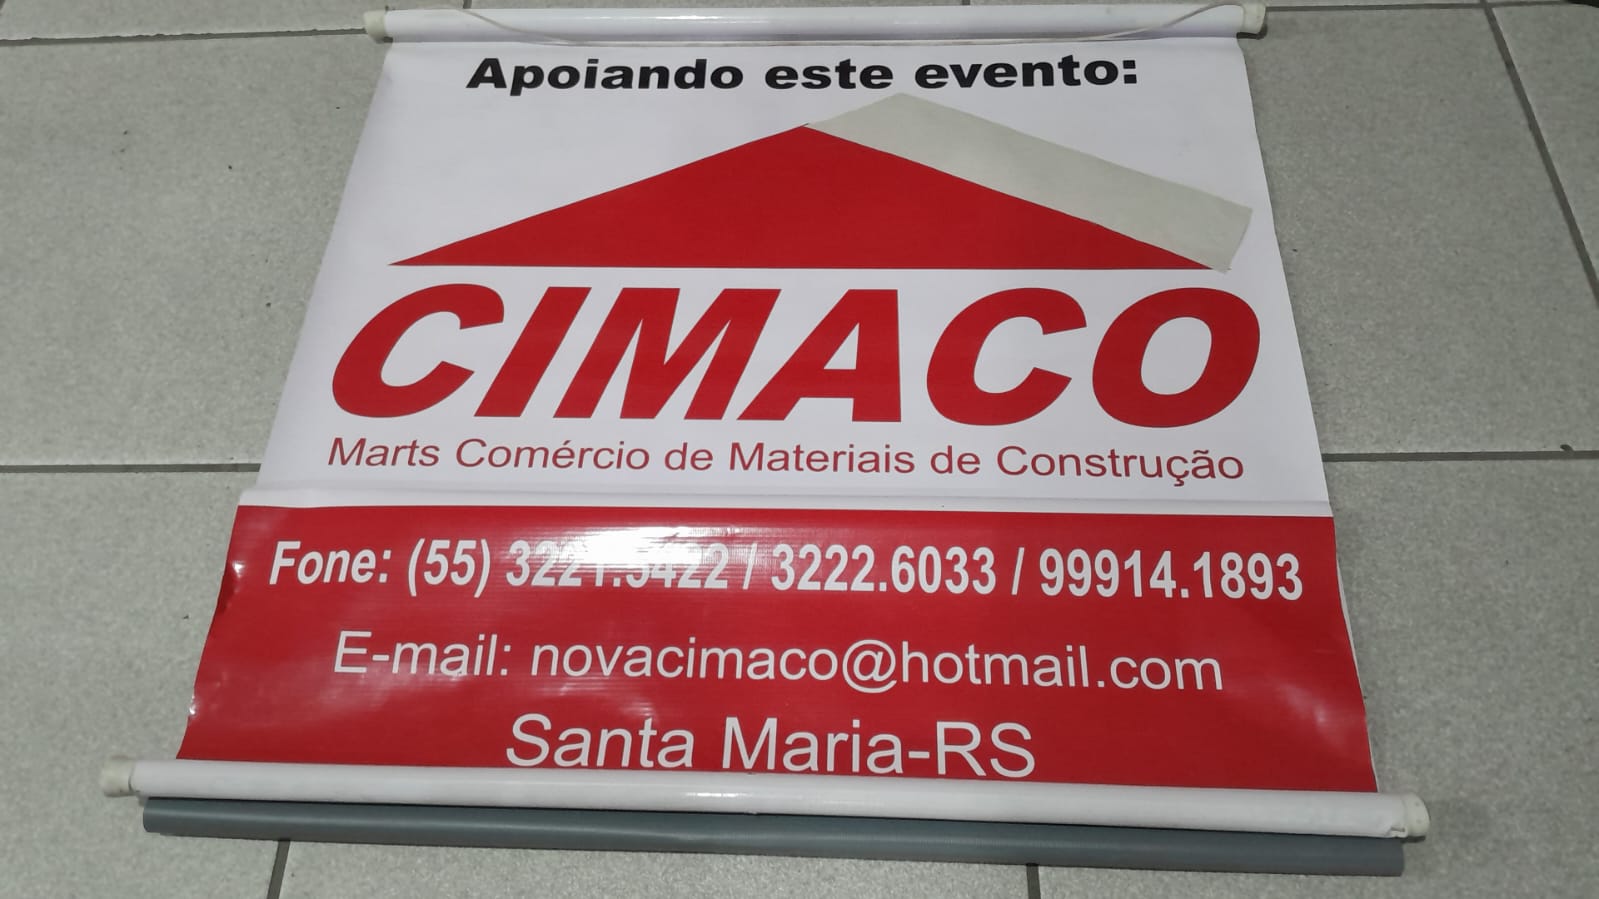 'CIMACO: MAT. DE CONSTRUÇÂO'